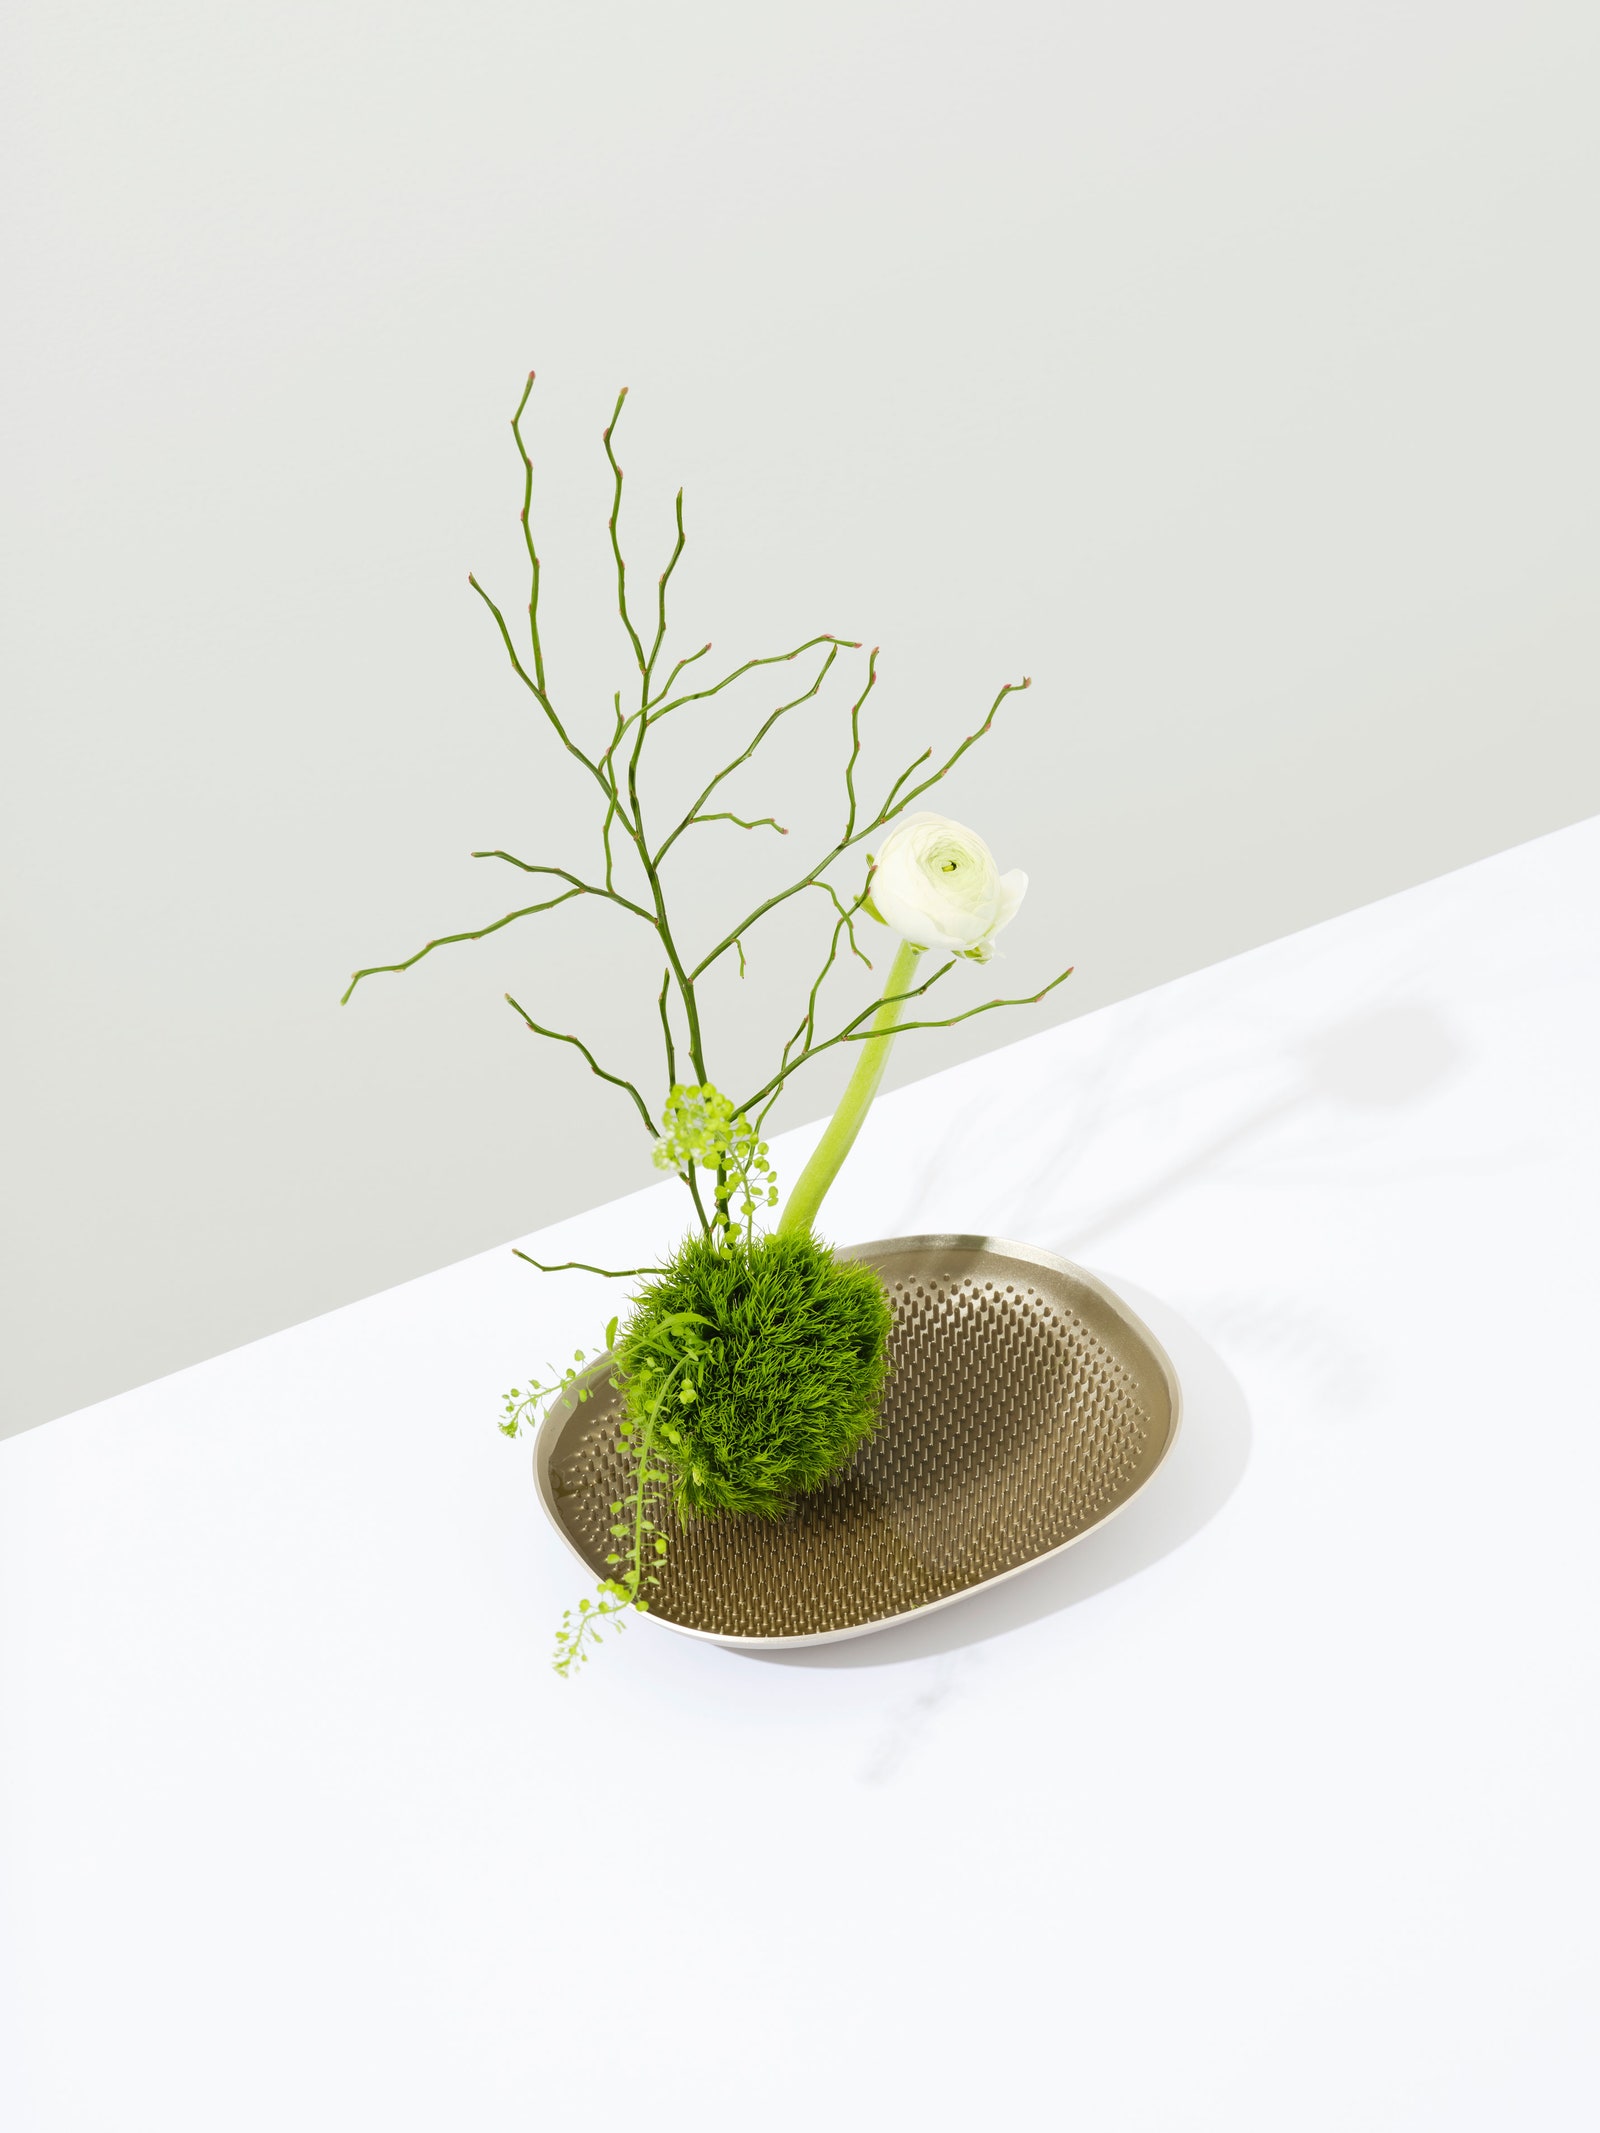 Jamie Wolfond. Frog Vase 2019. 13 x 18 x 3 см.